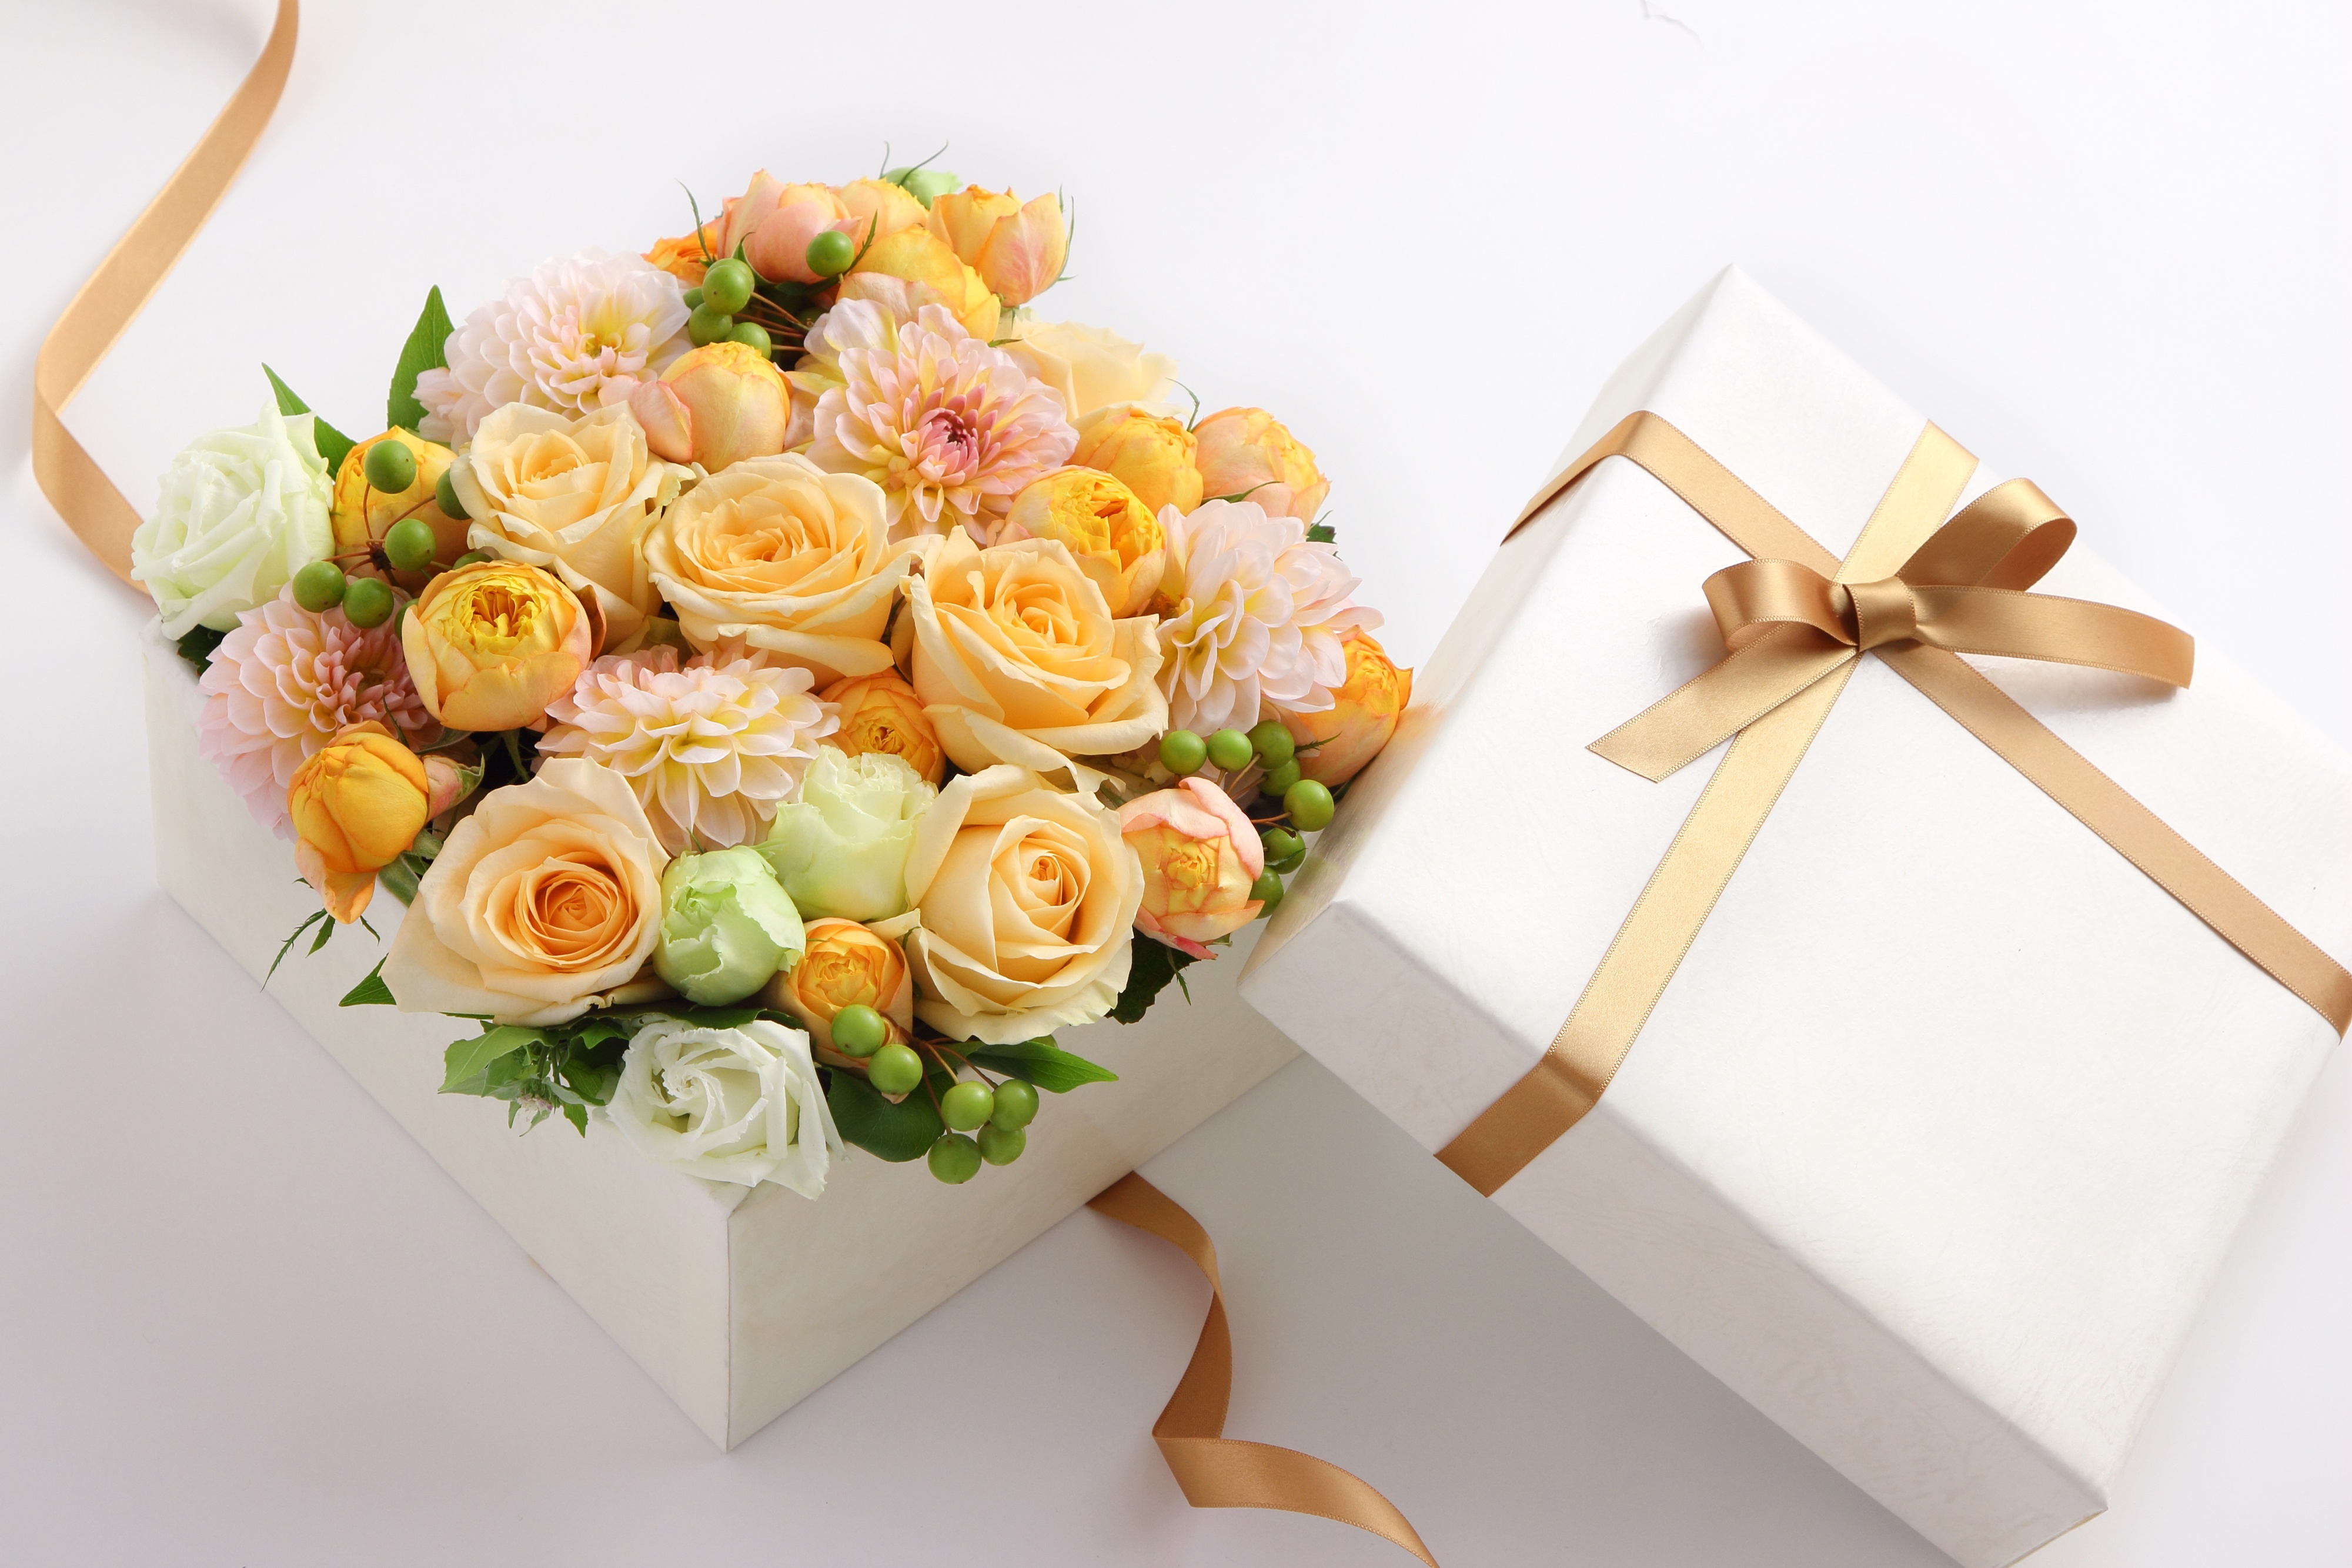 Картинка коробка с цветами. Цветы в коробке. Коробочка с цветами. Букет цветов в коробке. Красивые букеты в коробках.